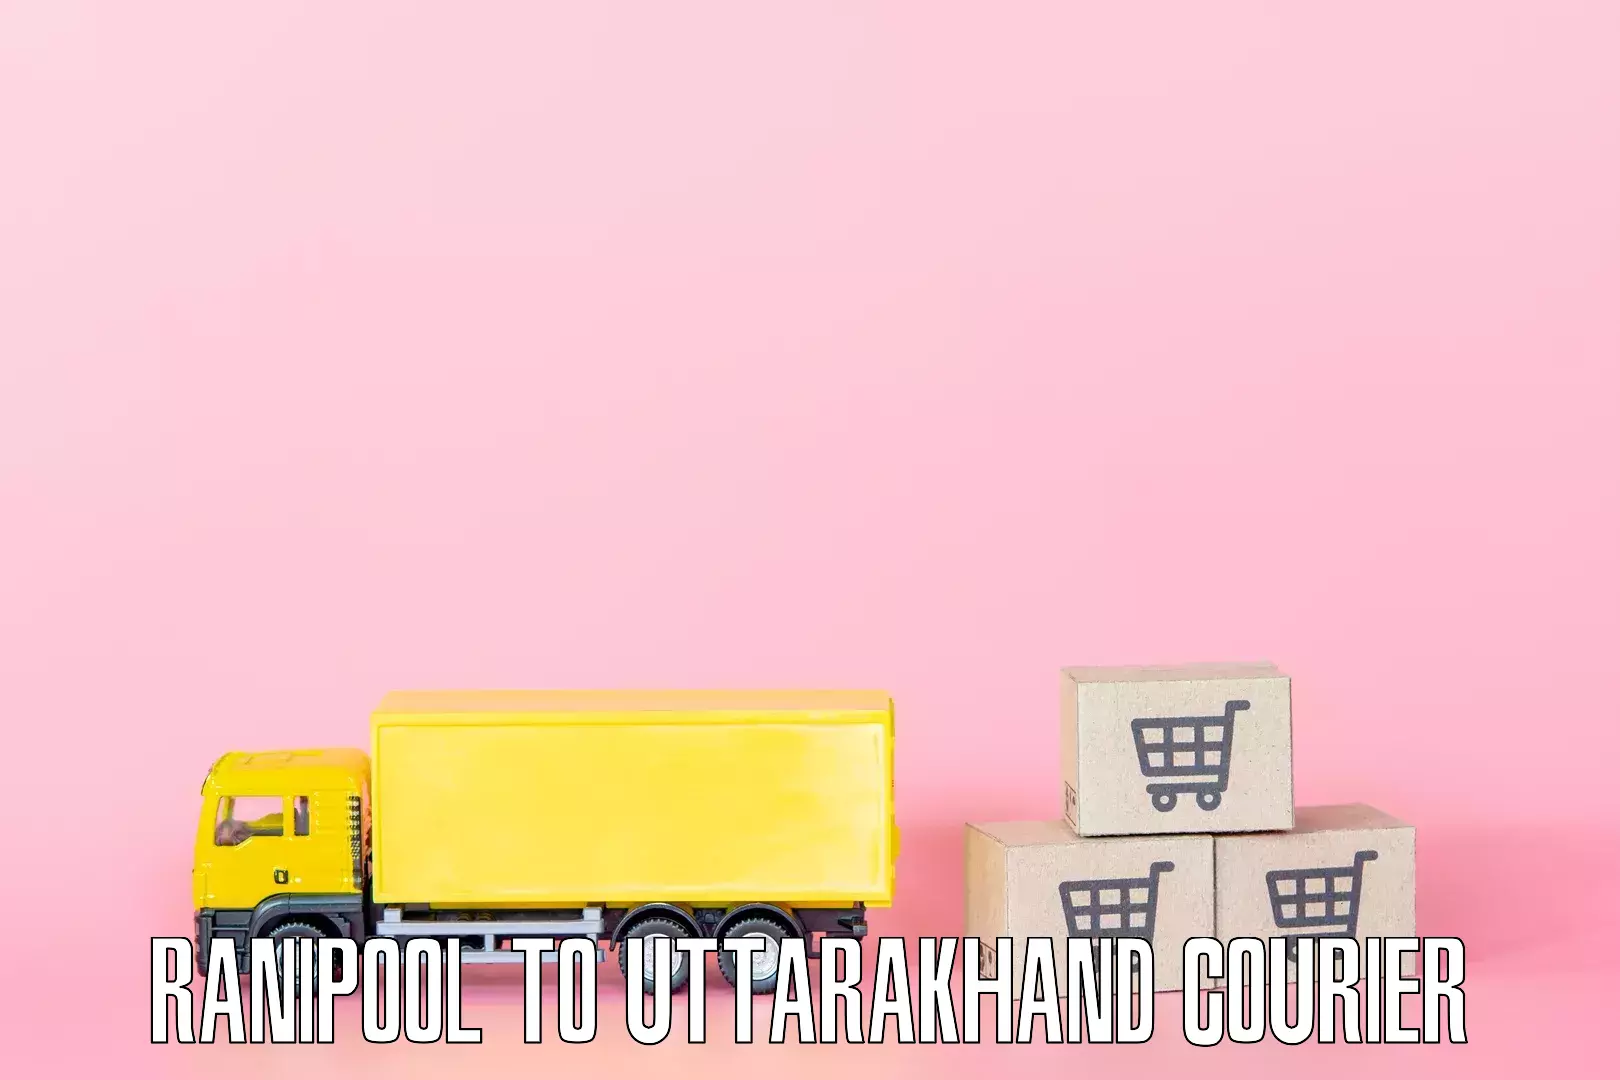 Full-service furniture transport Ranipool to Dehradun